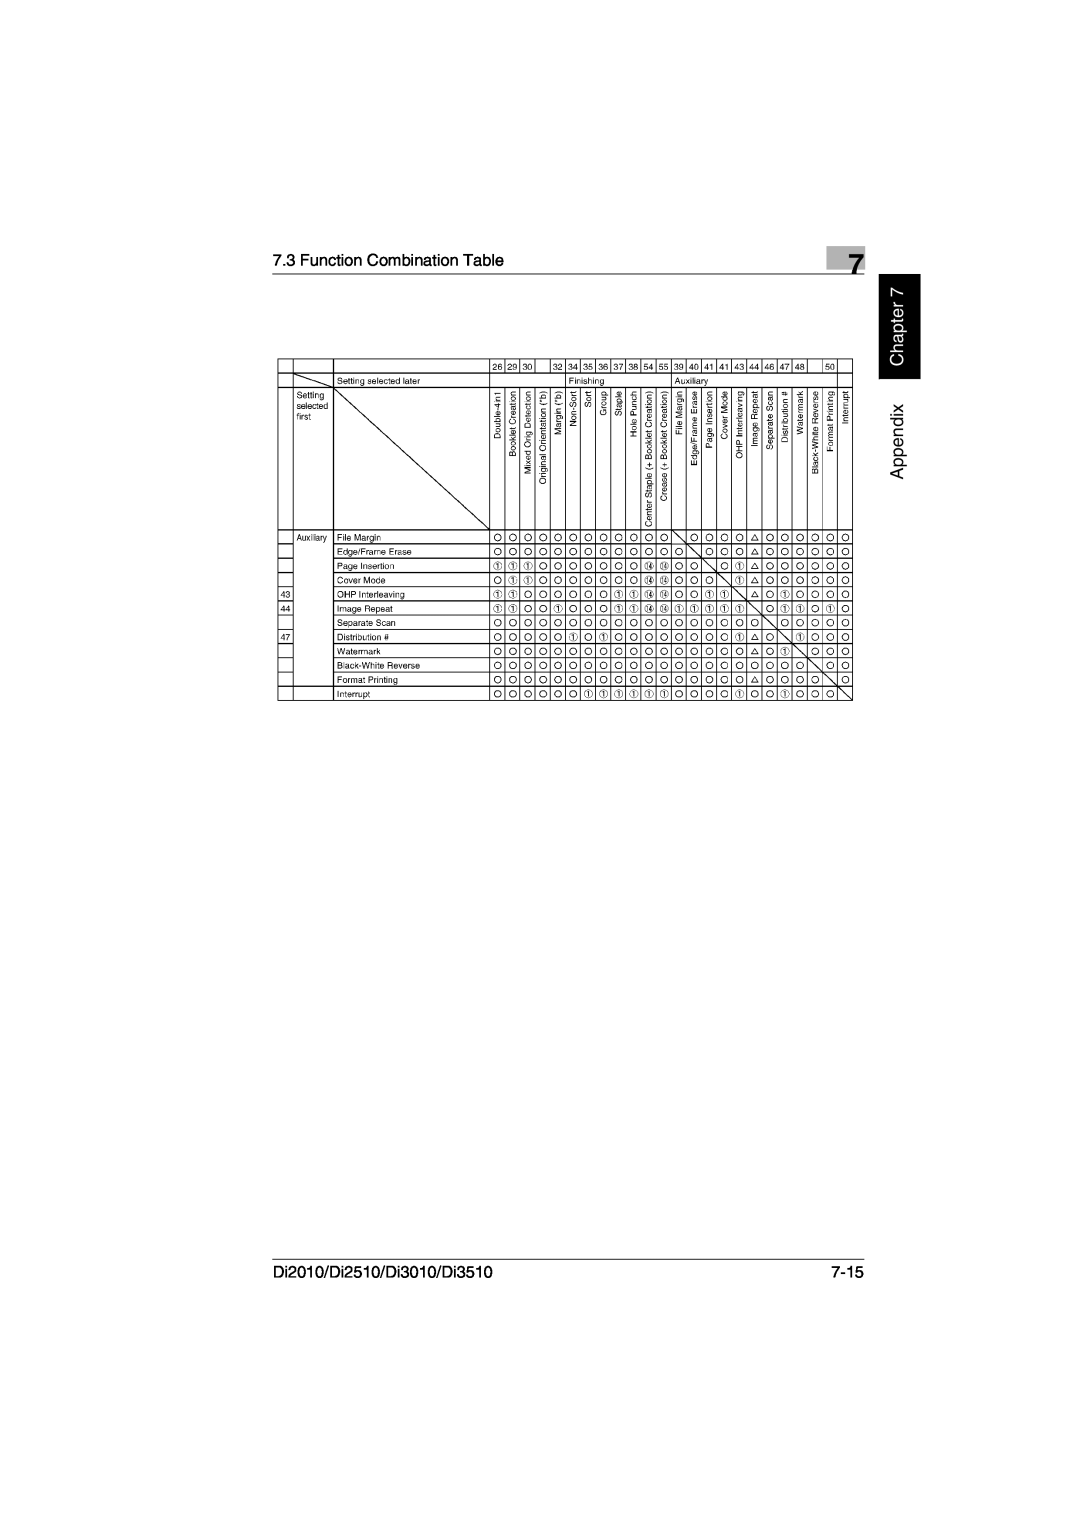 Minolta DI2510, DI2010, DI3010 user manual Appendix Chapter, Function Combination Table, Di2010/Di2510/Di3010/Di3510, 7-15 